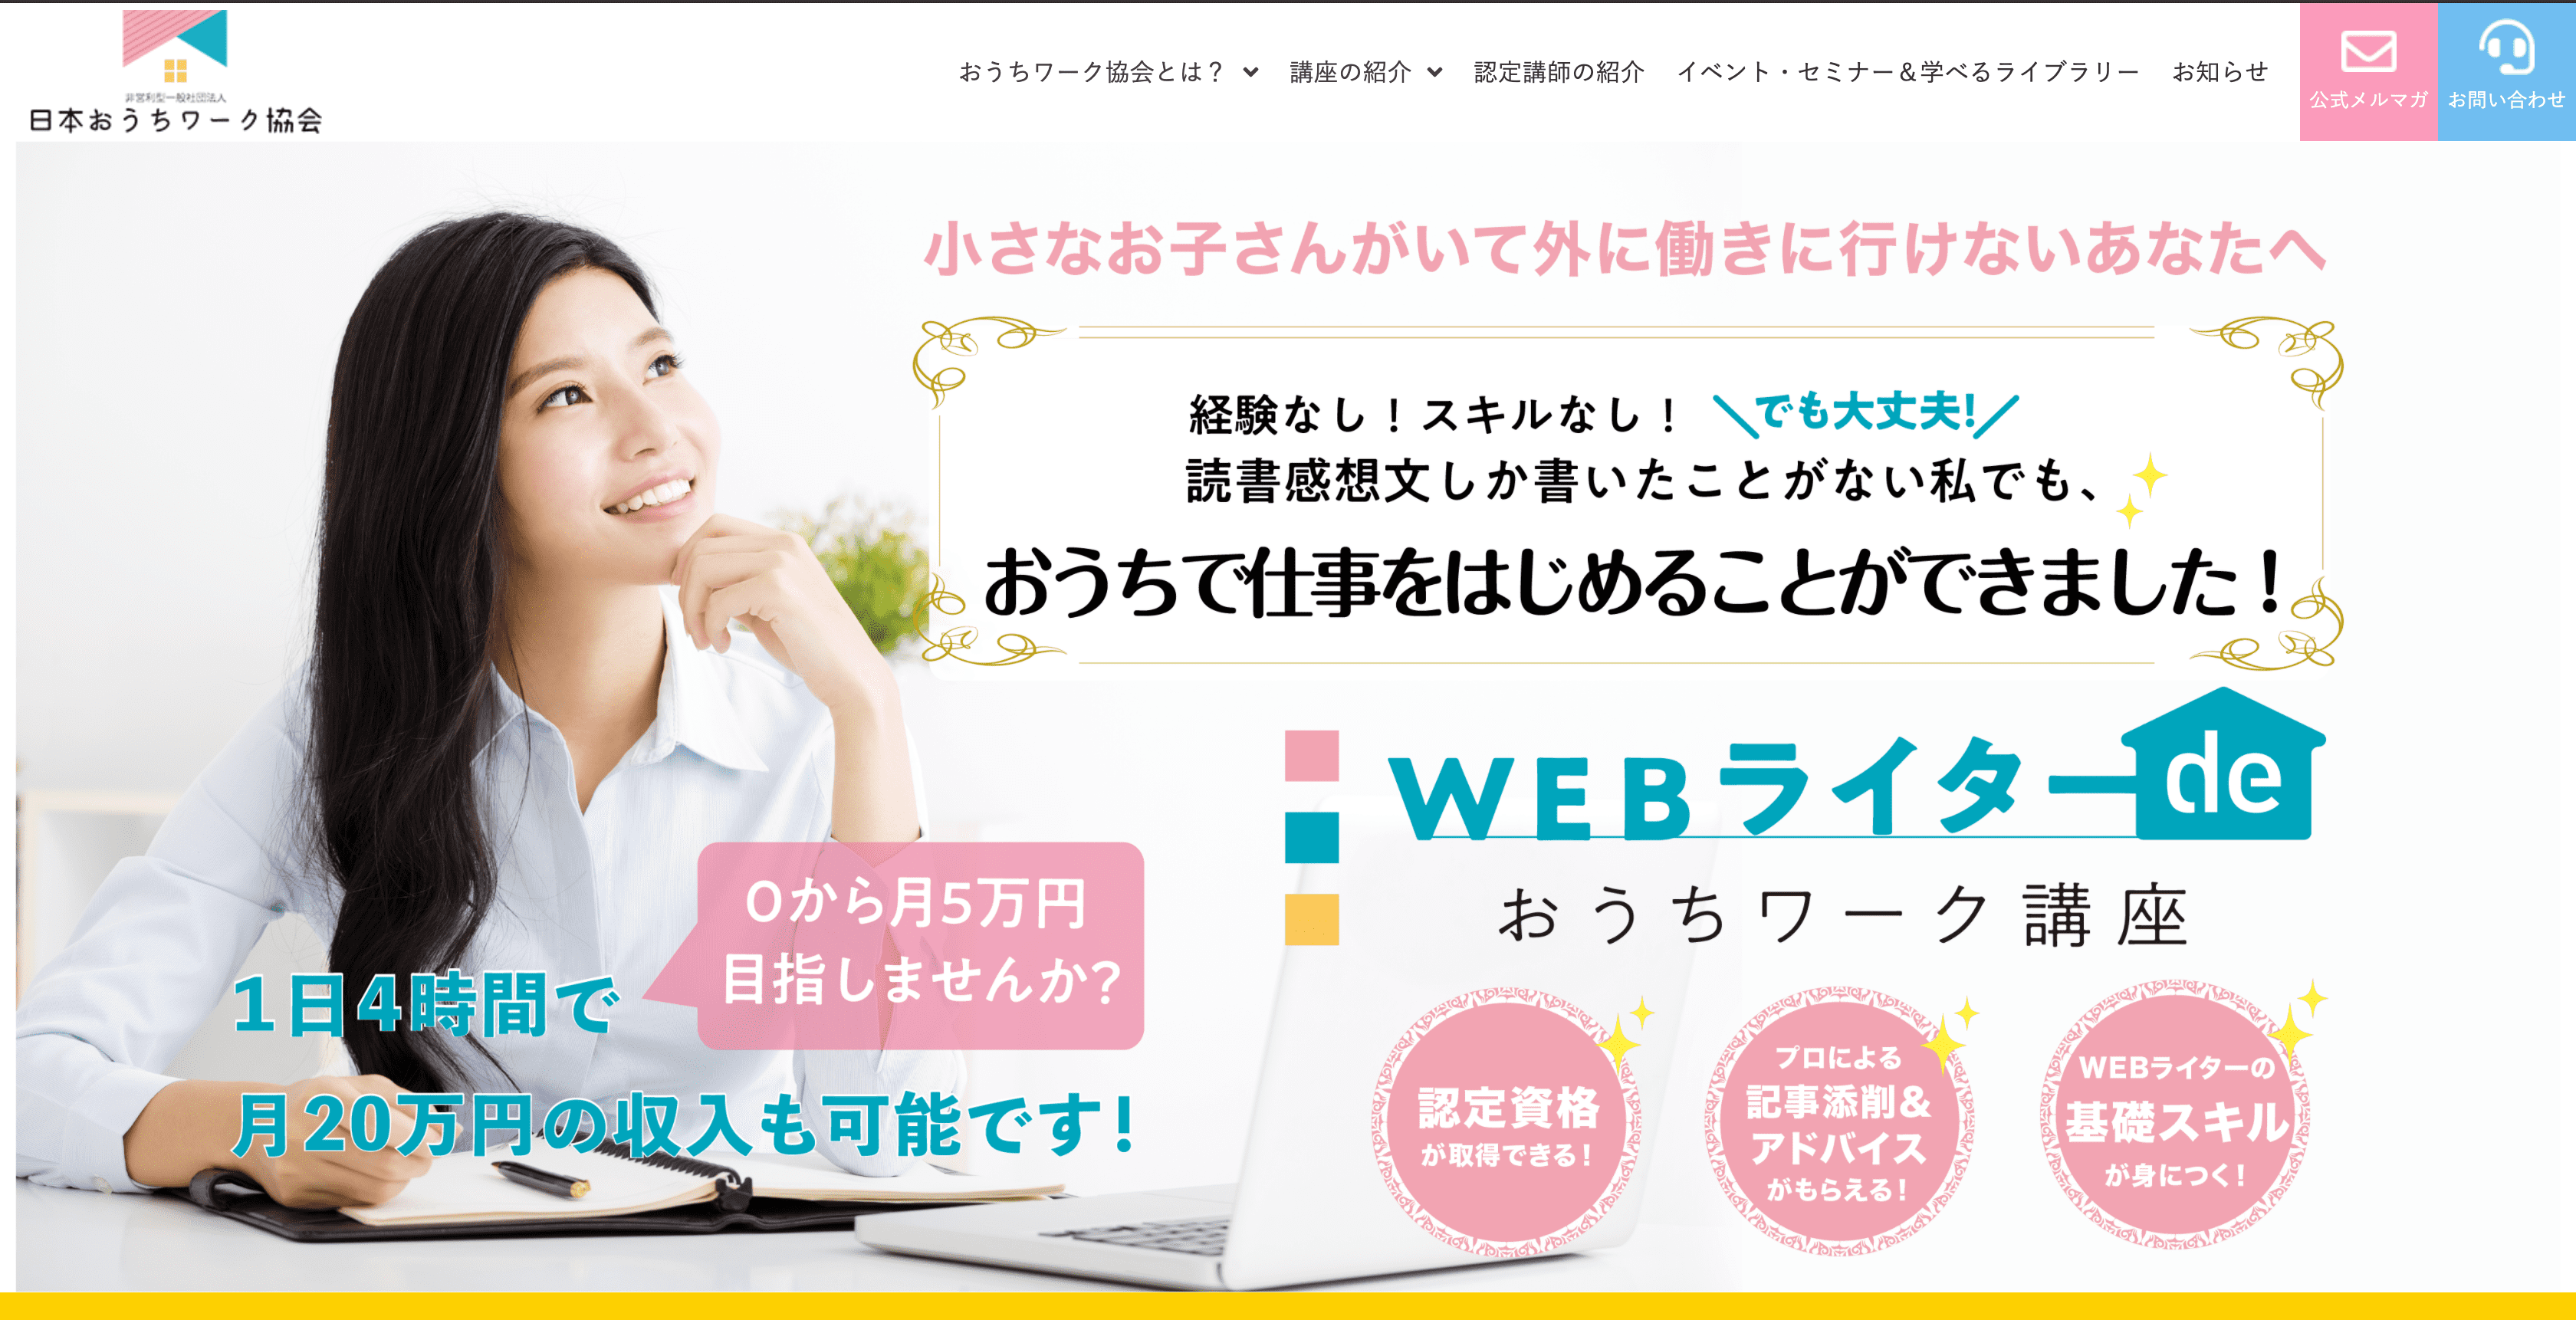 Webライターdeおうちワーク講座